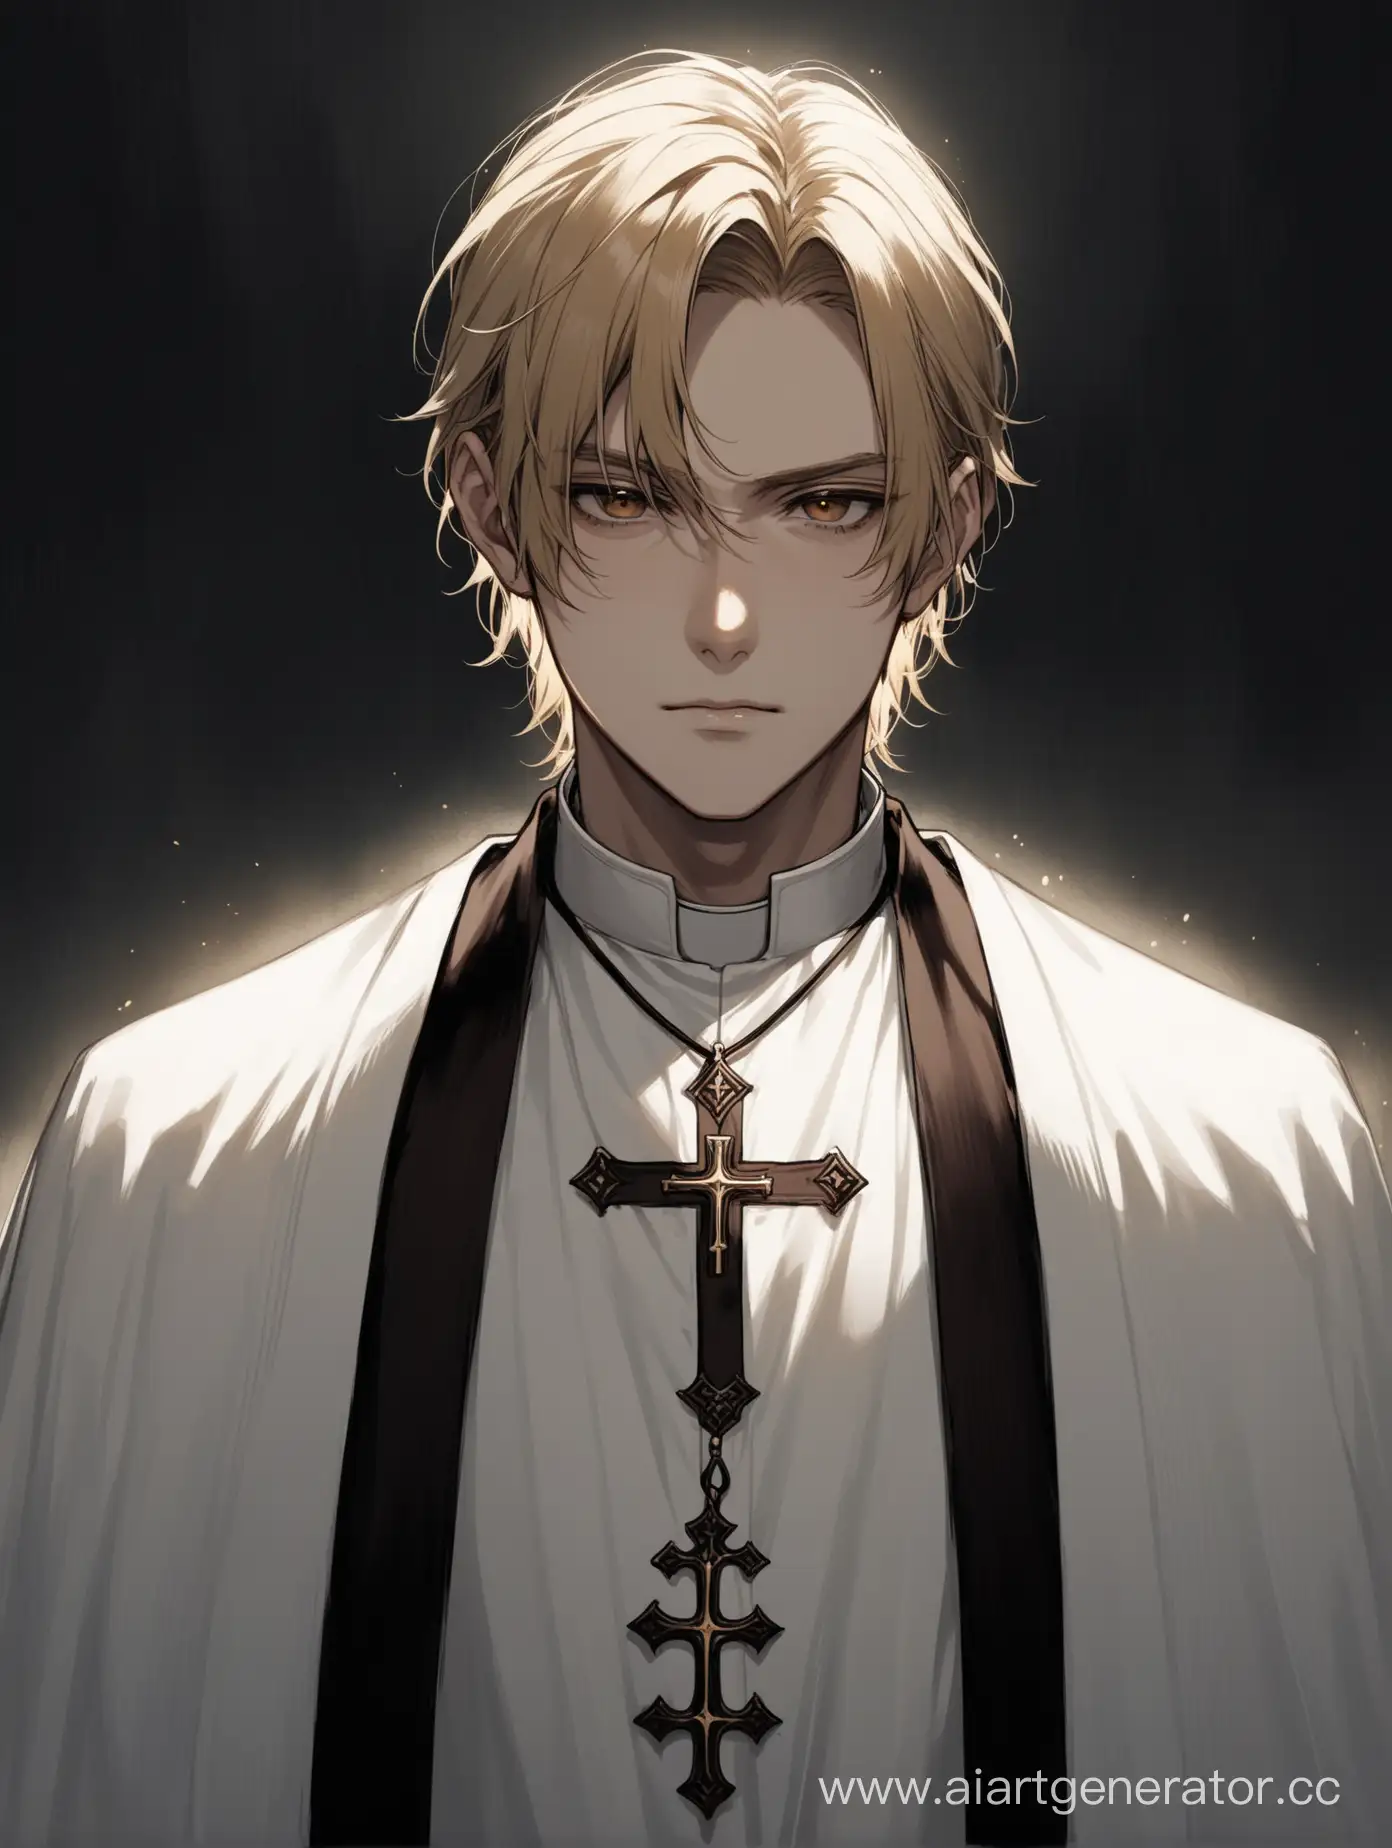 Священник парень с блондинистыми волосами и карими глазами, хмурый